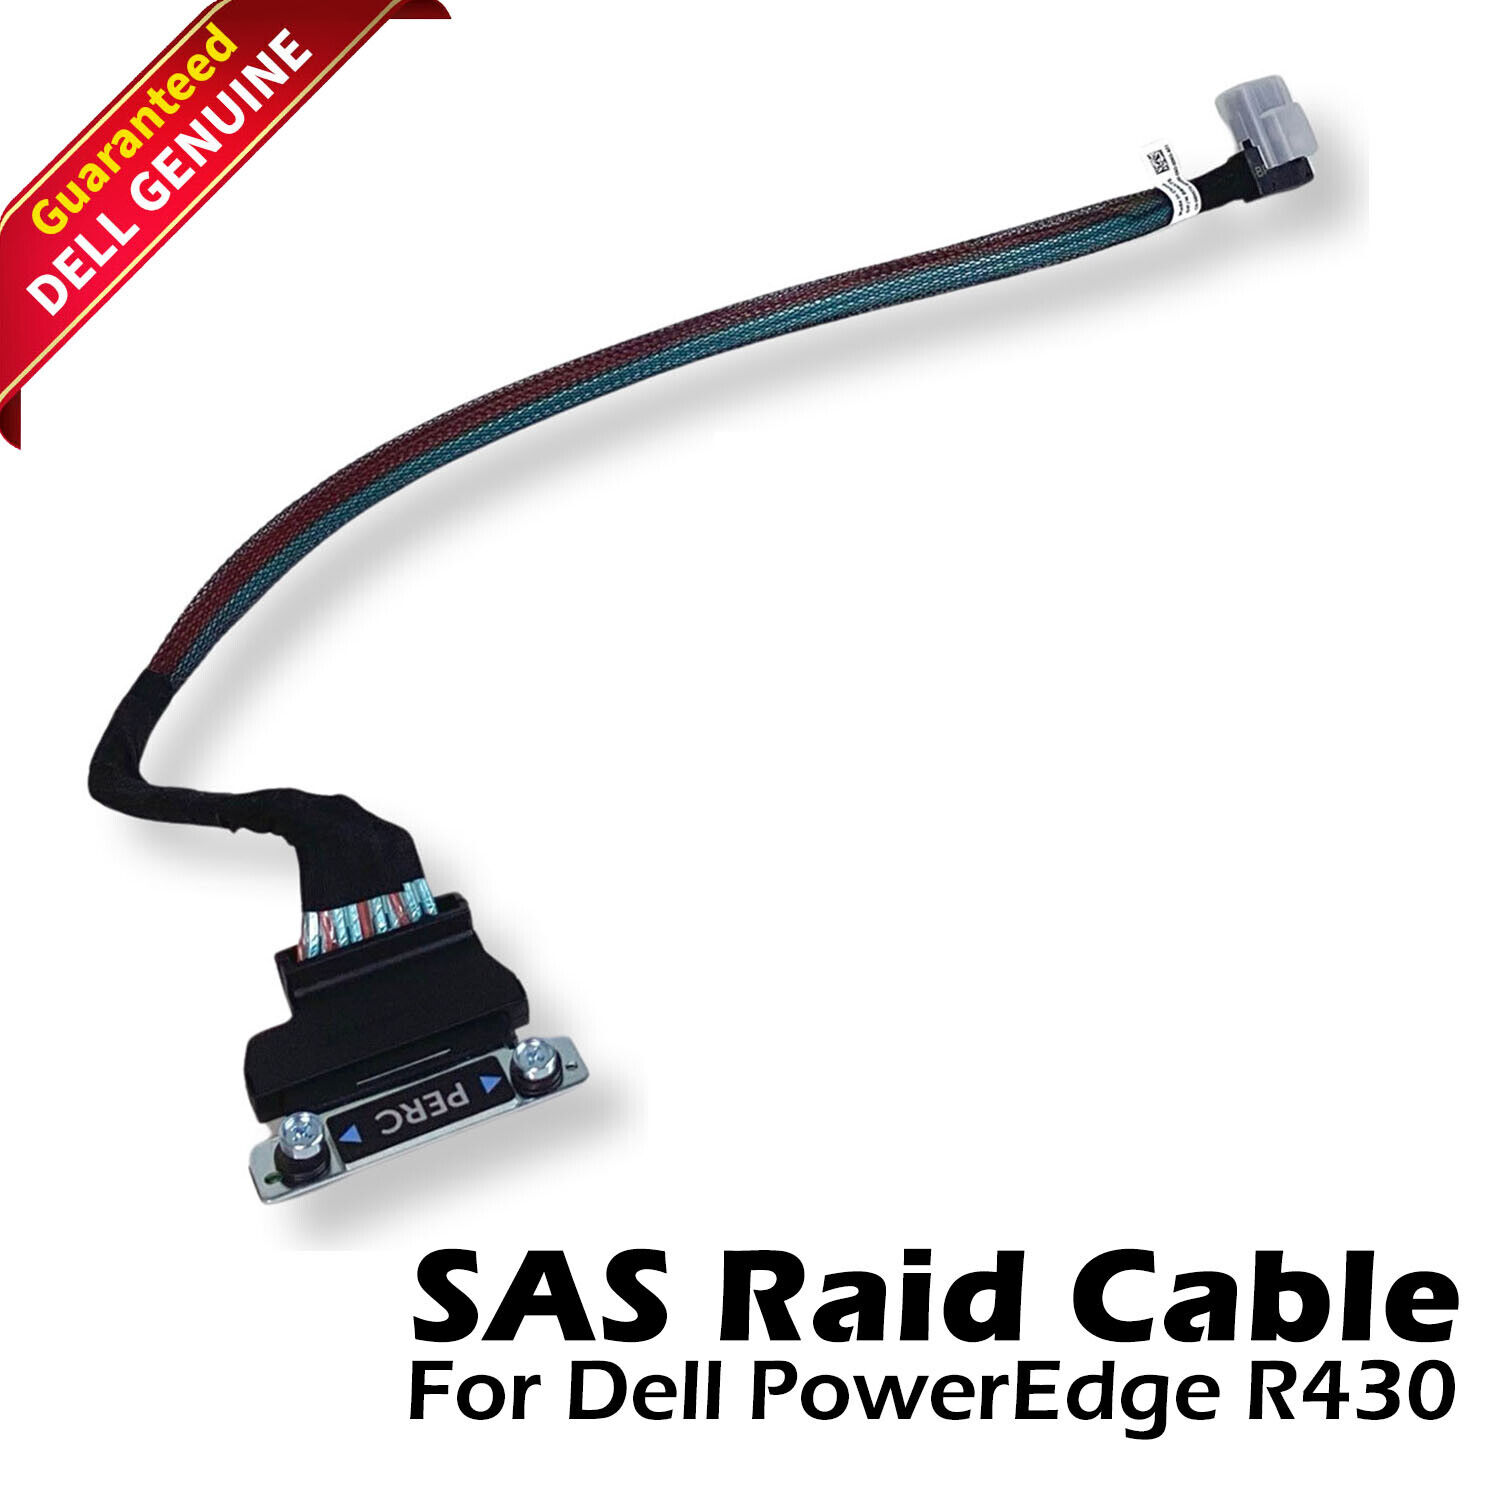 Genuine Dell PowerEdge R430 4-Bay Backplane SAS Raid Cable 8NX75 08NX75